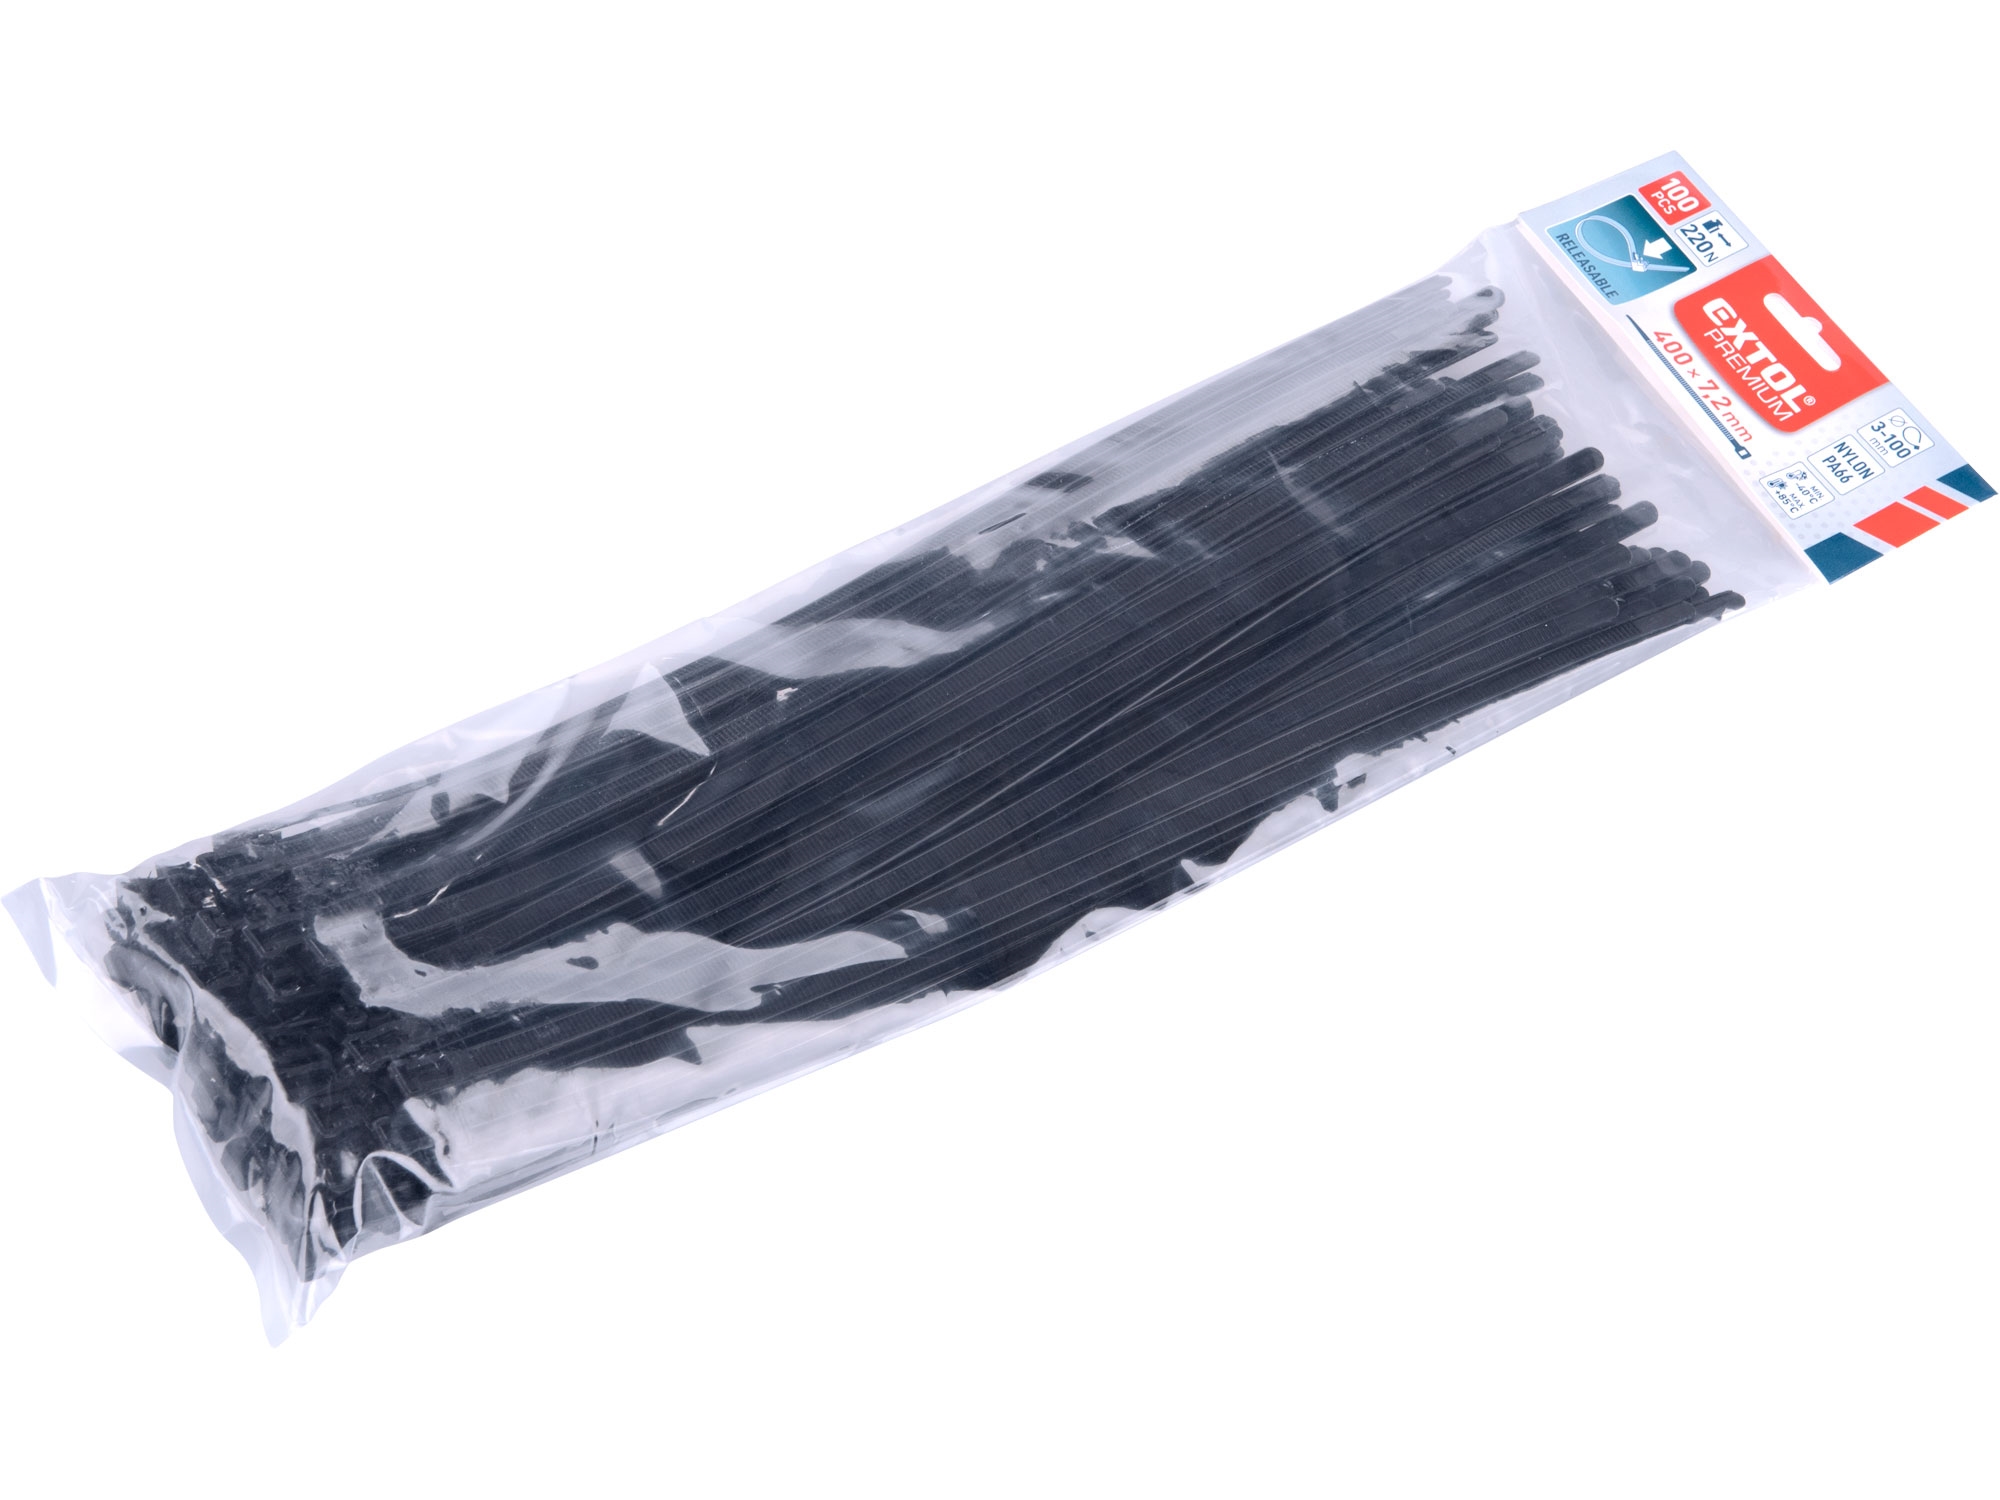 pásky stahovací černé, rozpojitelné, 400x7,2mm, 100ks, nylon PA66